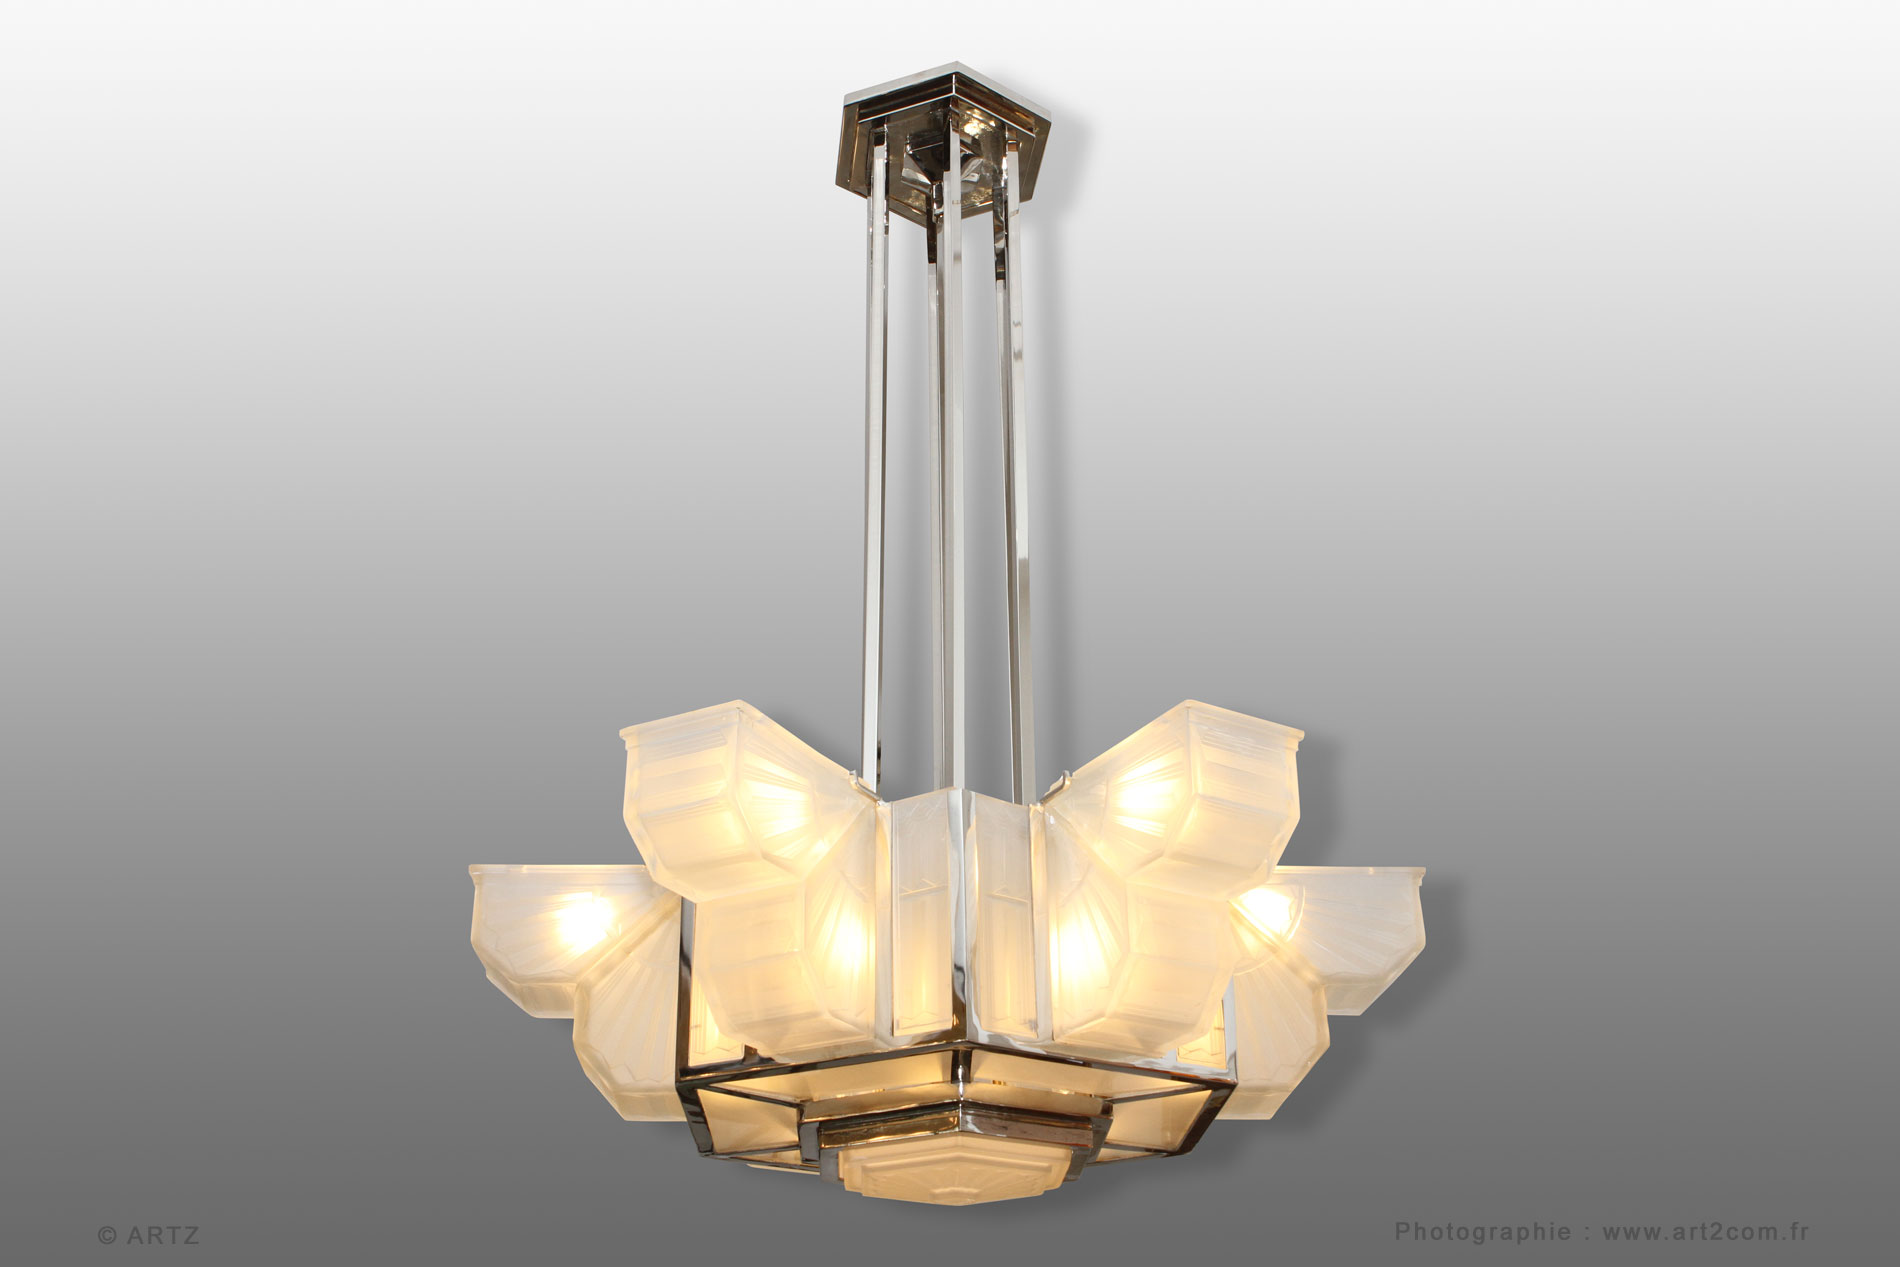 Exceptional chandelier DES HANOTS - HETTIER VINCENT